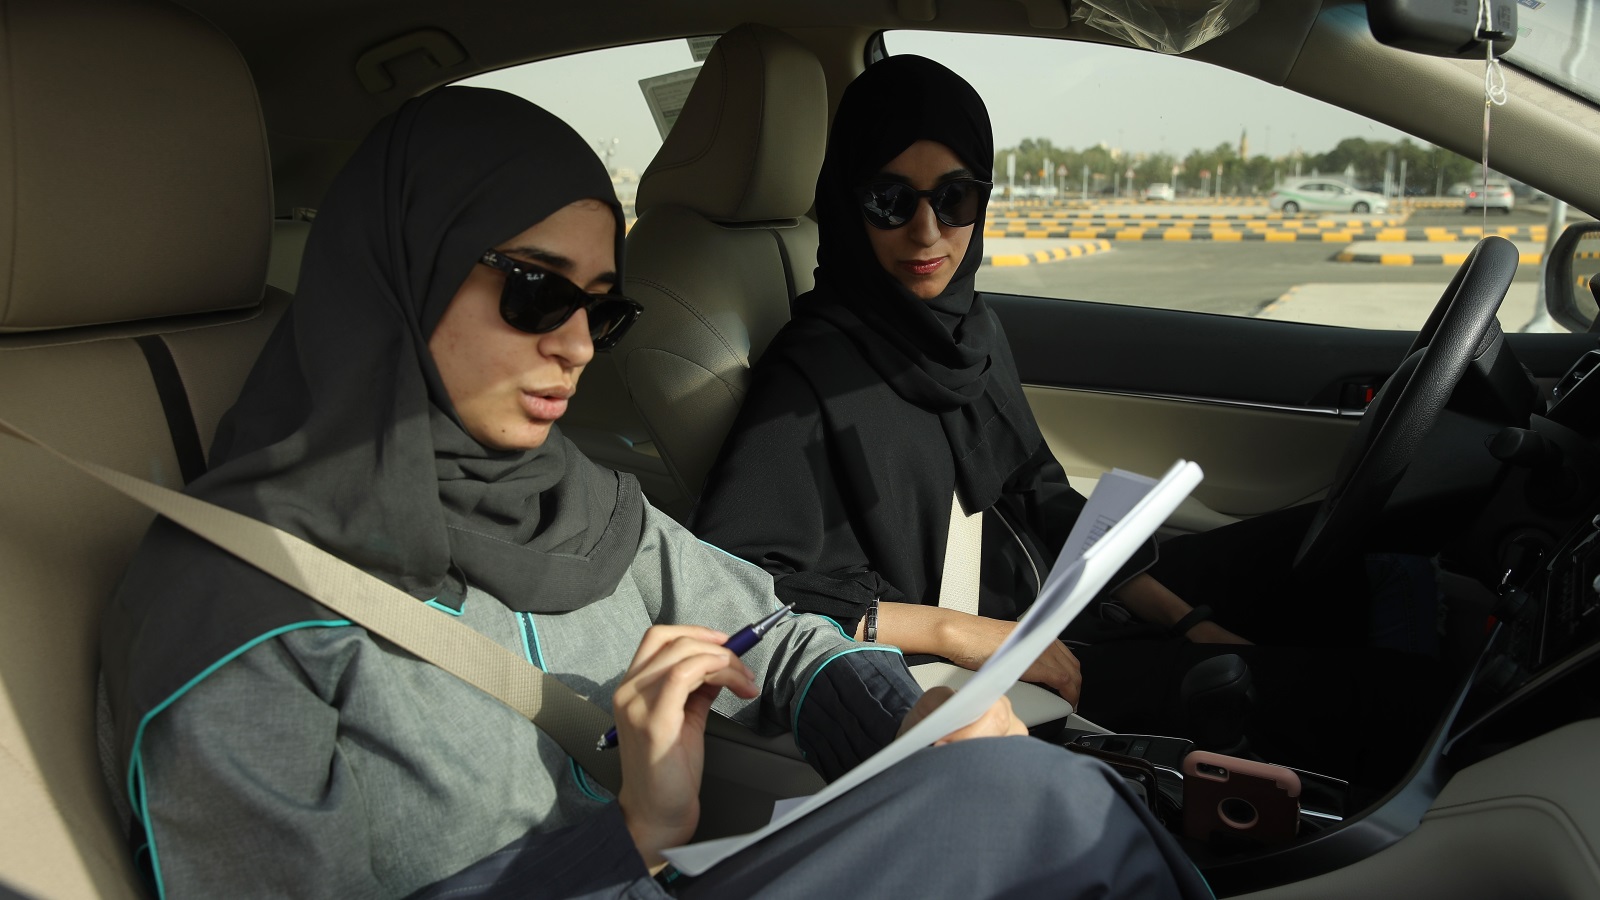 شركة كريم تخطط لاجتذاب ما يصل إلى مئة ألف سائقة سعودية بحلول يونيو/حزيران 2019(غيتي)